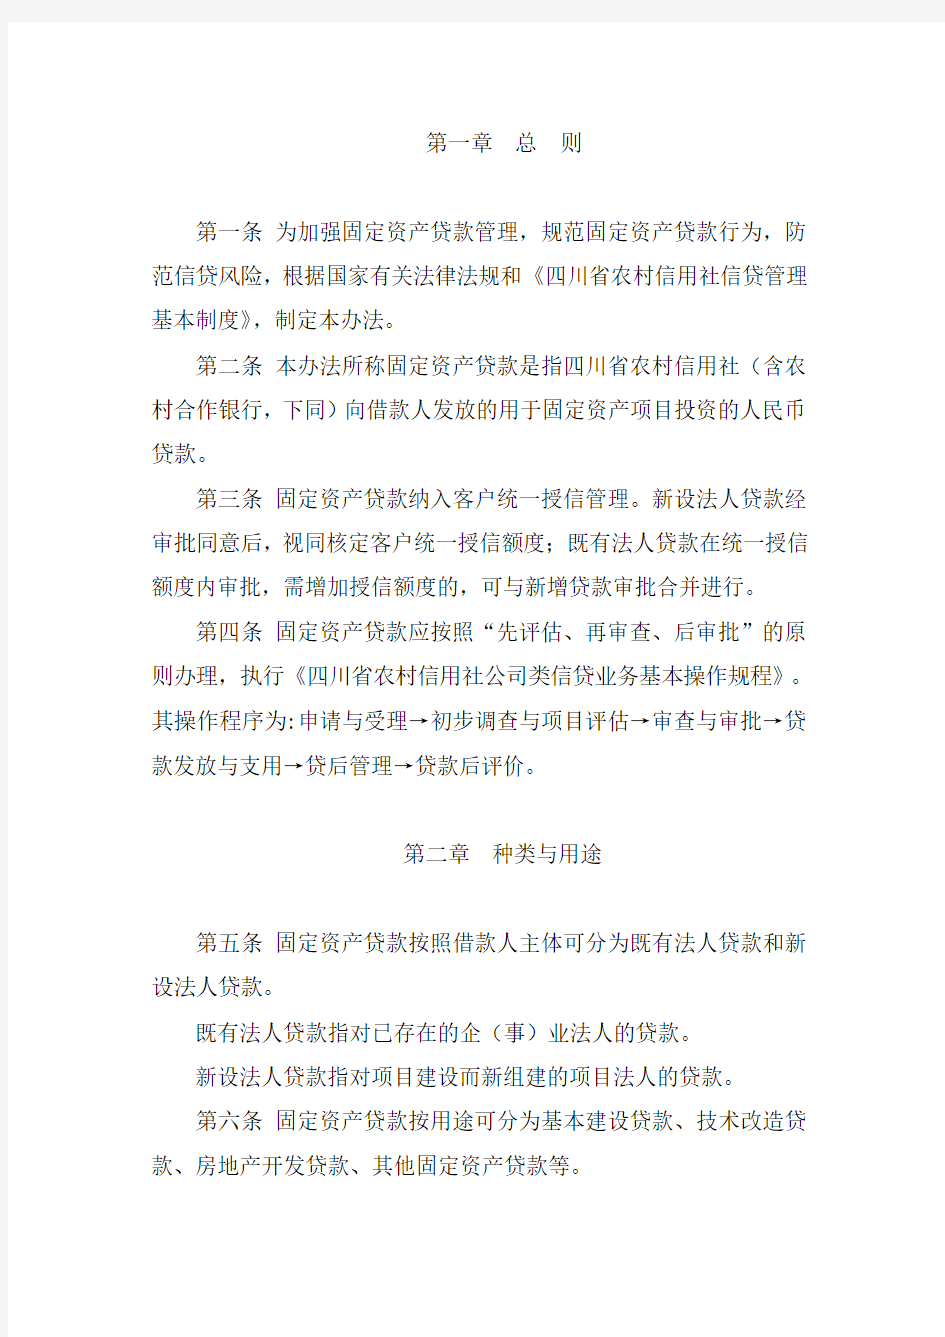 四川省农村信用社固定资产贷款管理暂行办法